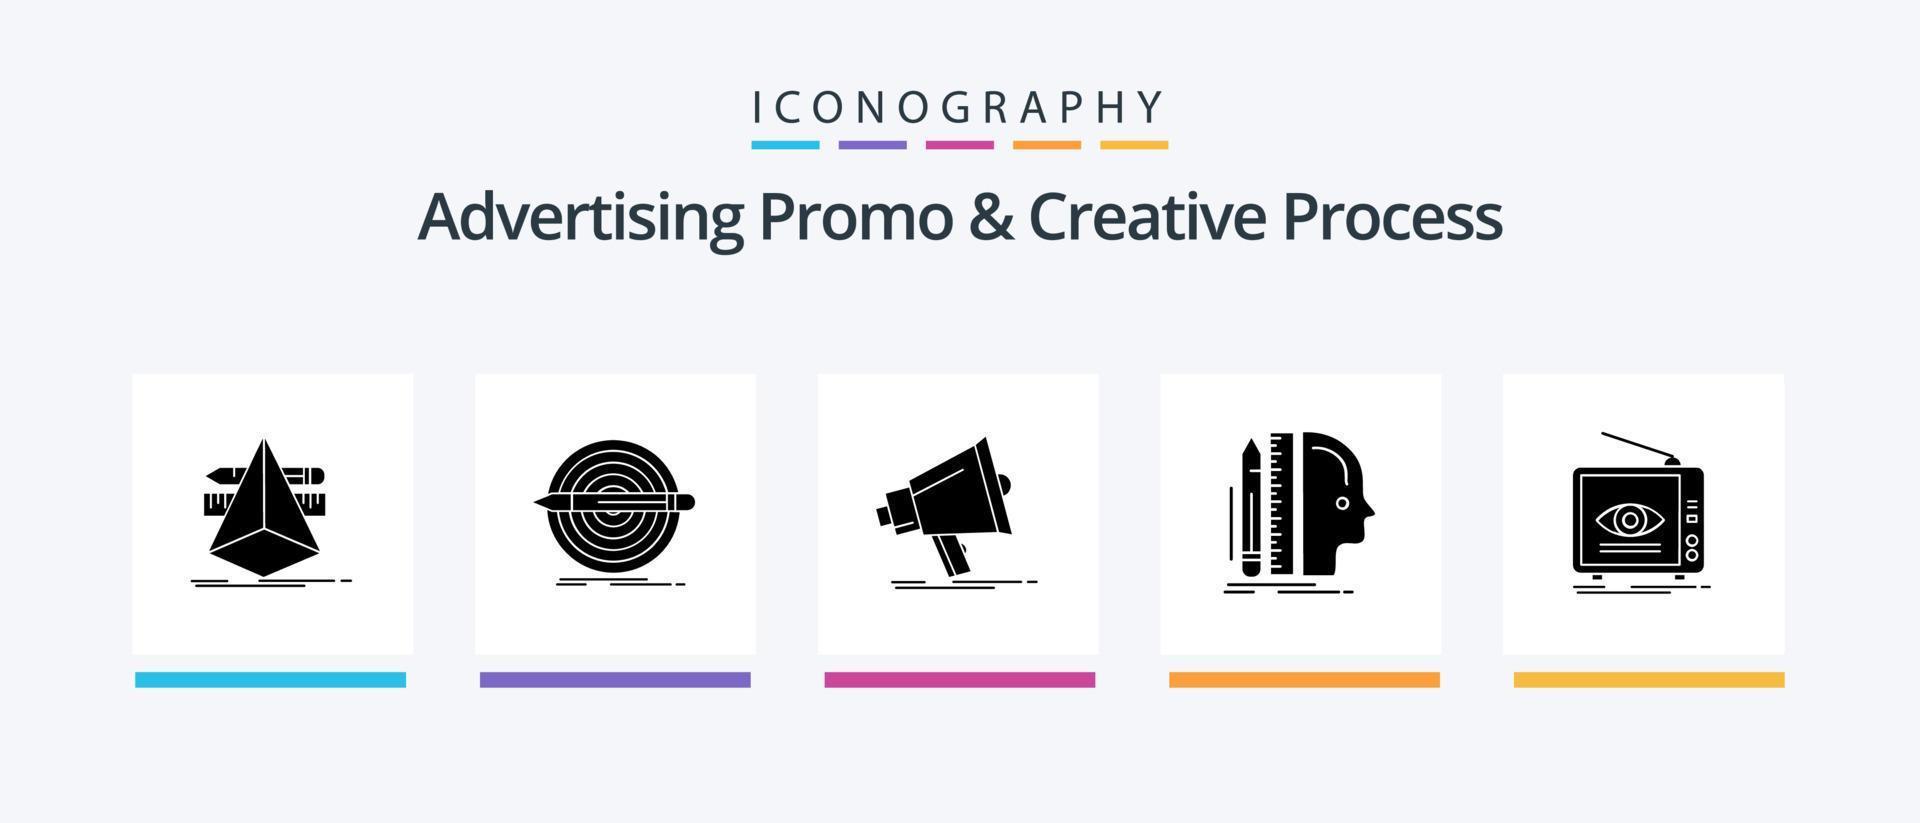 promoción publicitaria y paquete de iconos de glifo 5 de proceso creativo que incluye regla. diseño. colocar. megáfono. marketing. diseño de iconos creativos vector